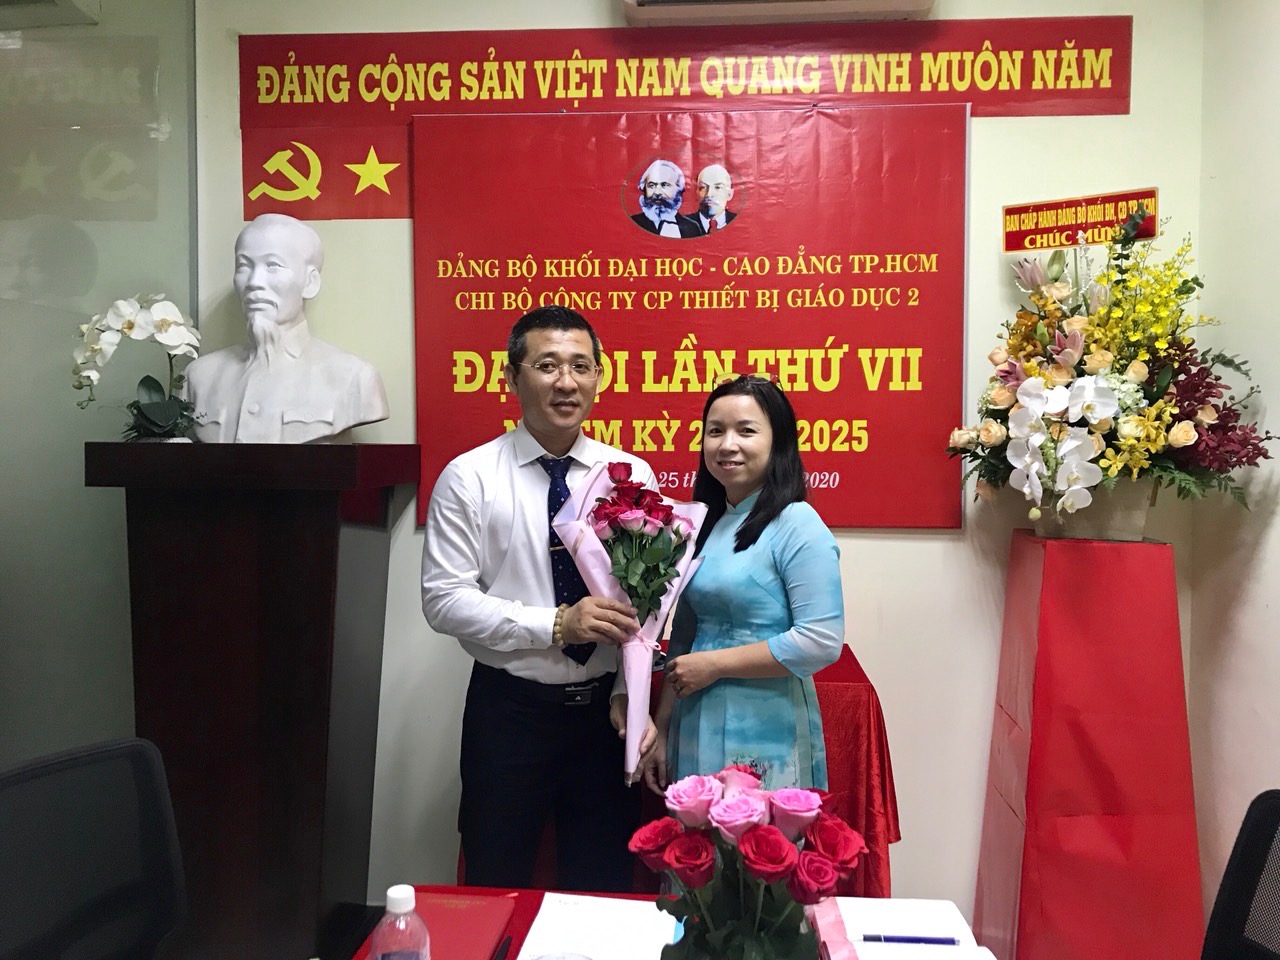 Đồng chí Huỳnh Xuân Hoàn - Bí thư Chi bộ nhiệm kỳ 2020 – 2025 ra mắt đại hội